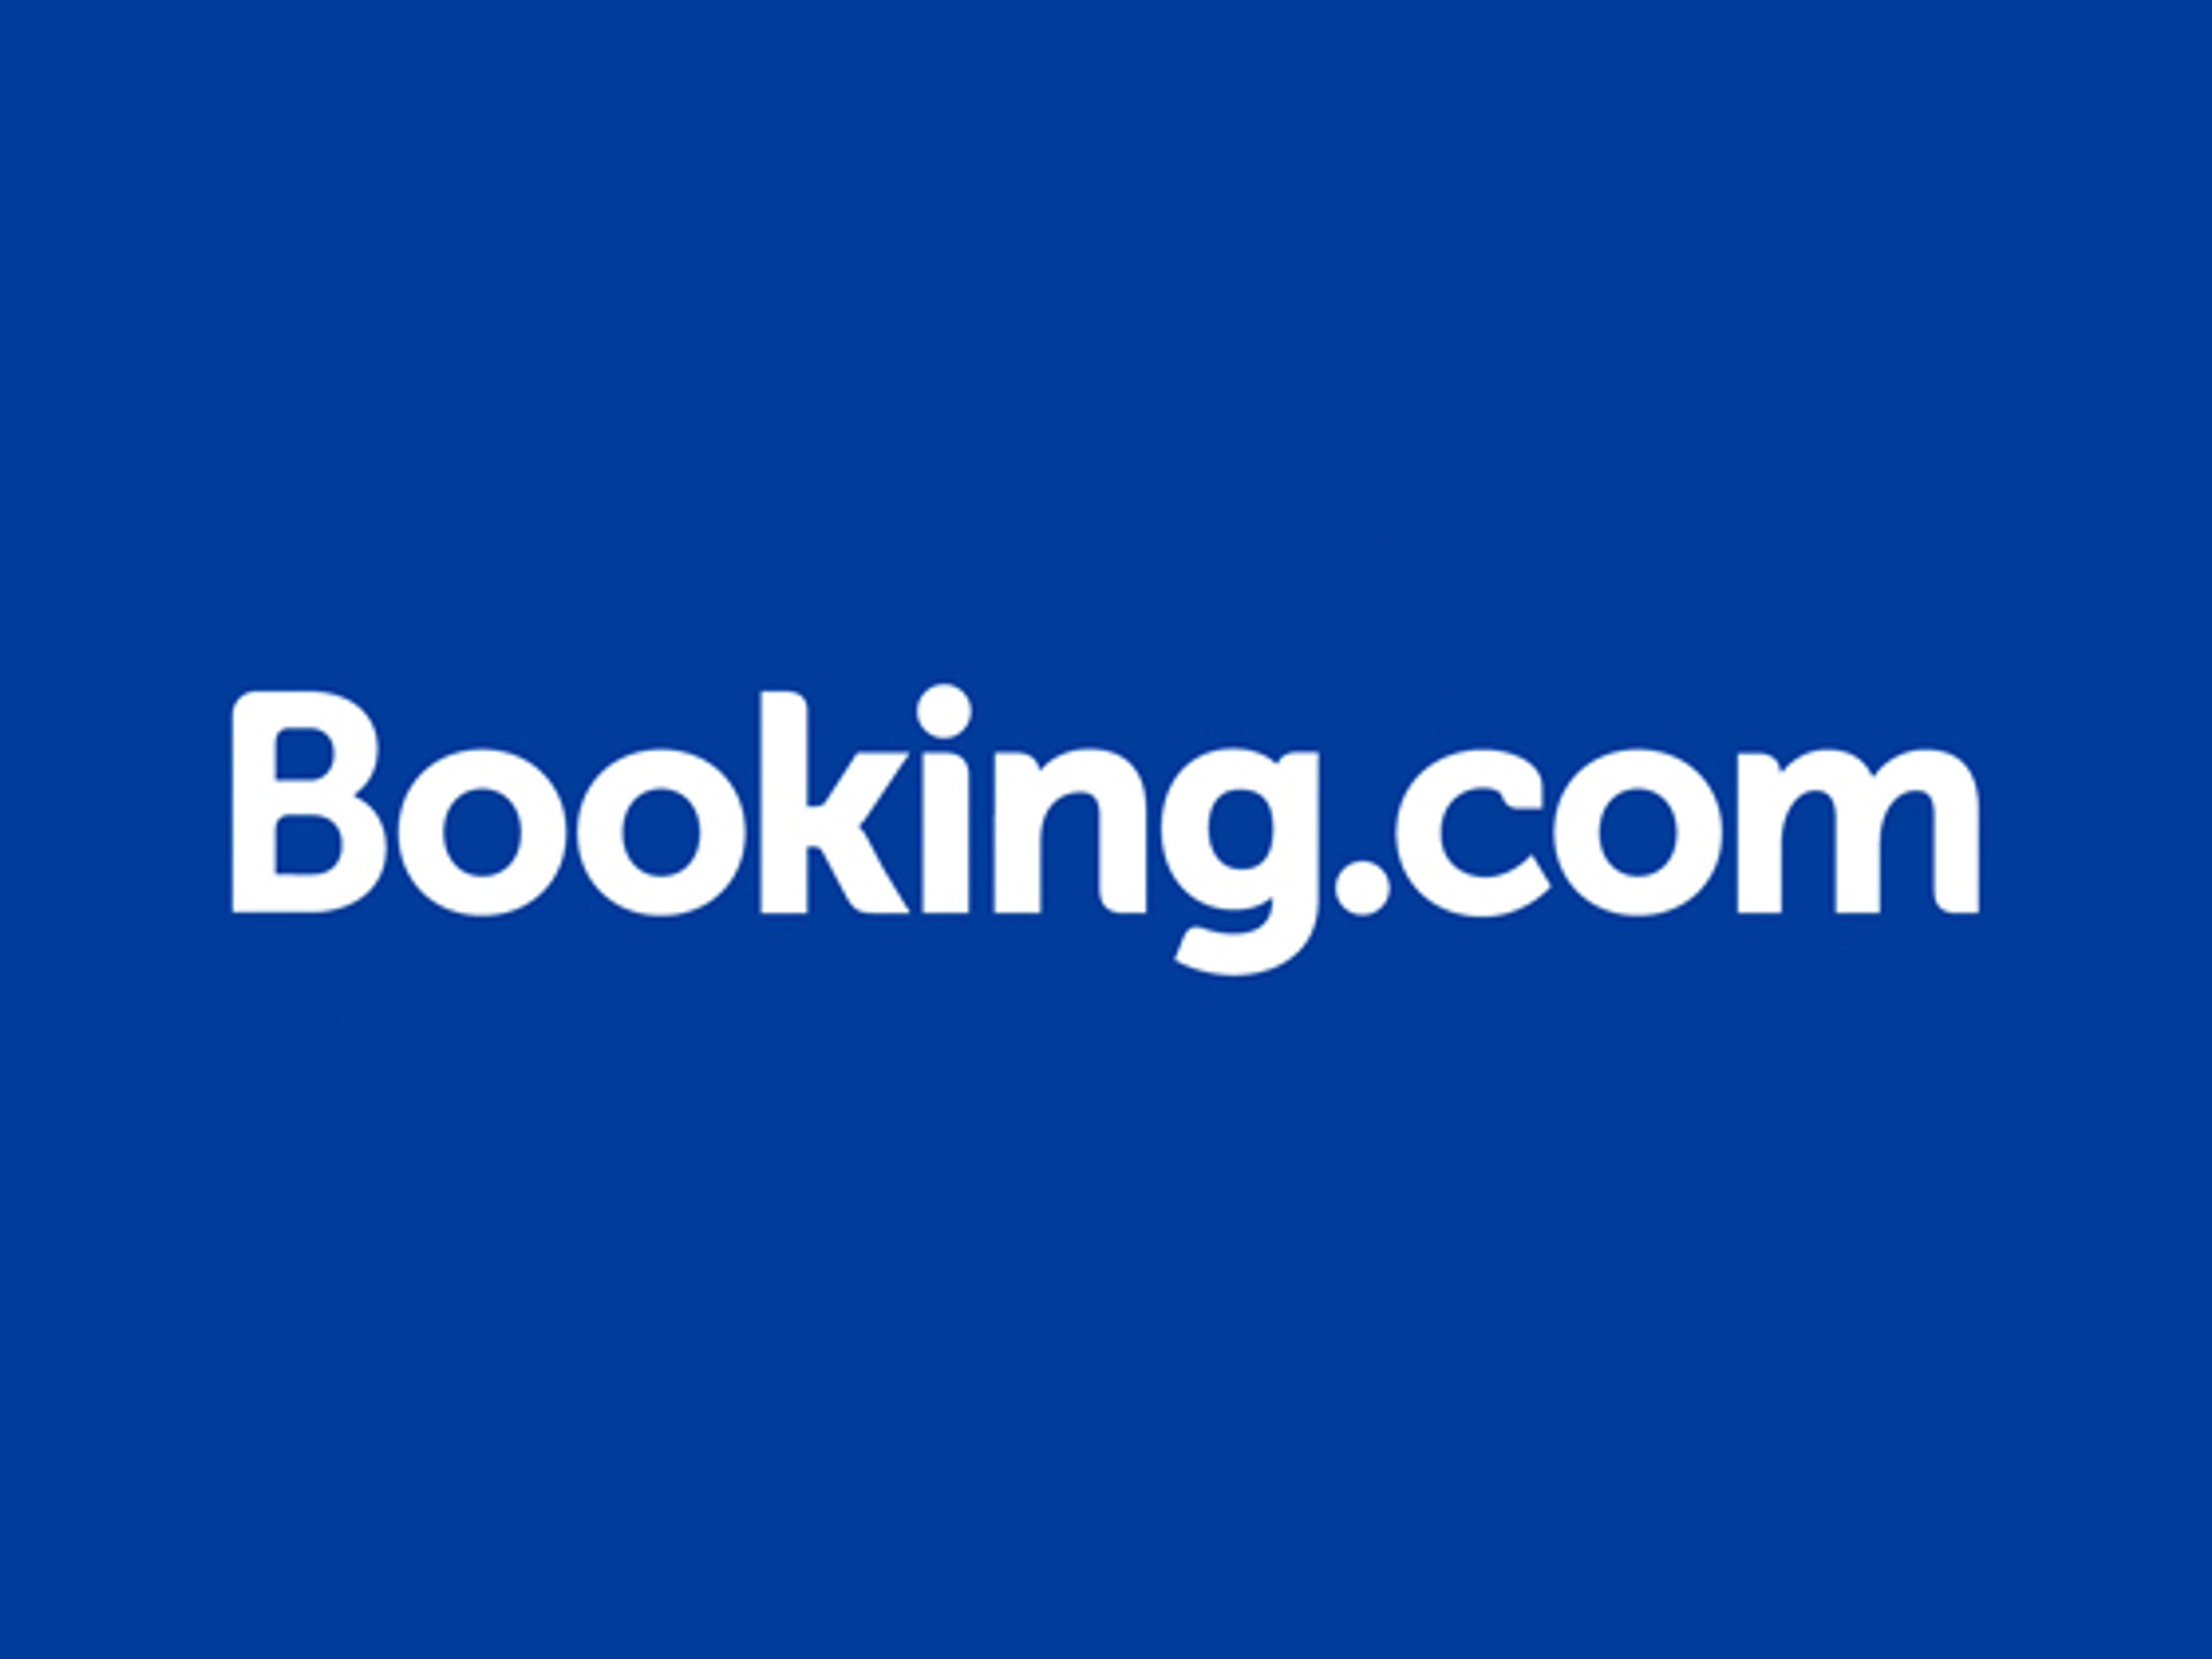 Booking.com Gutschein lll Jetzt 50% Rabatt & weitere Codes